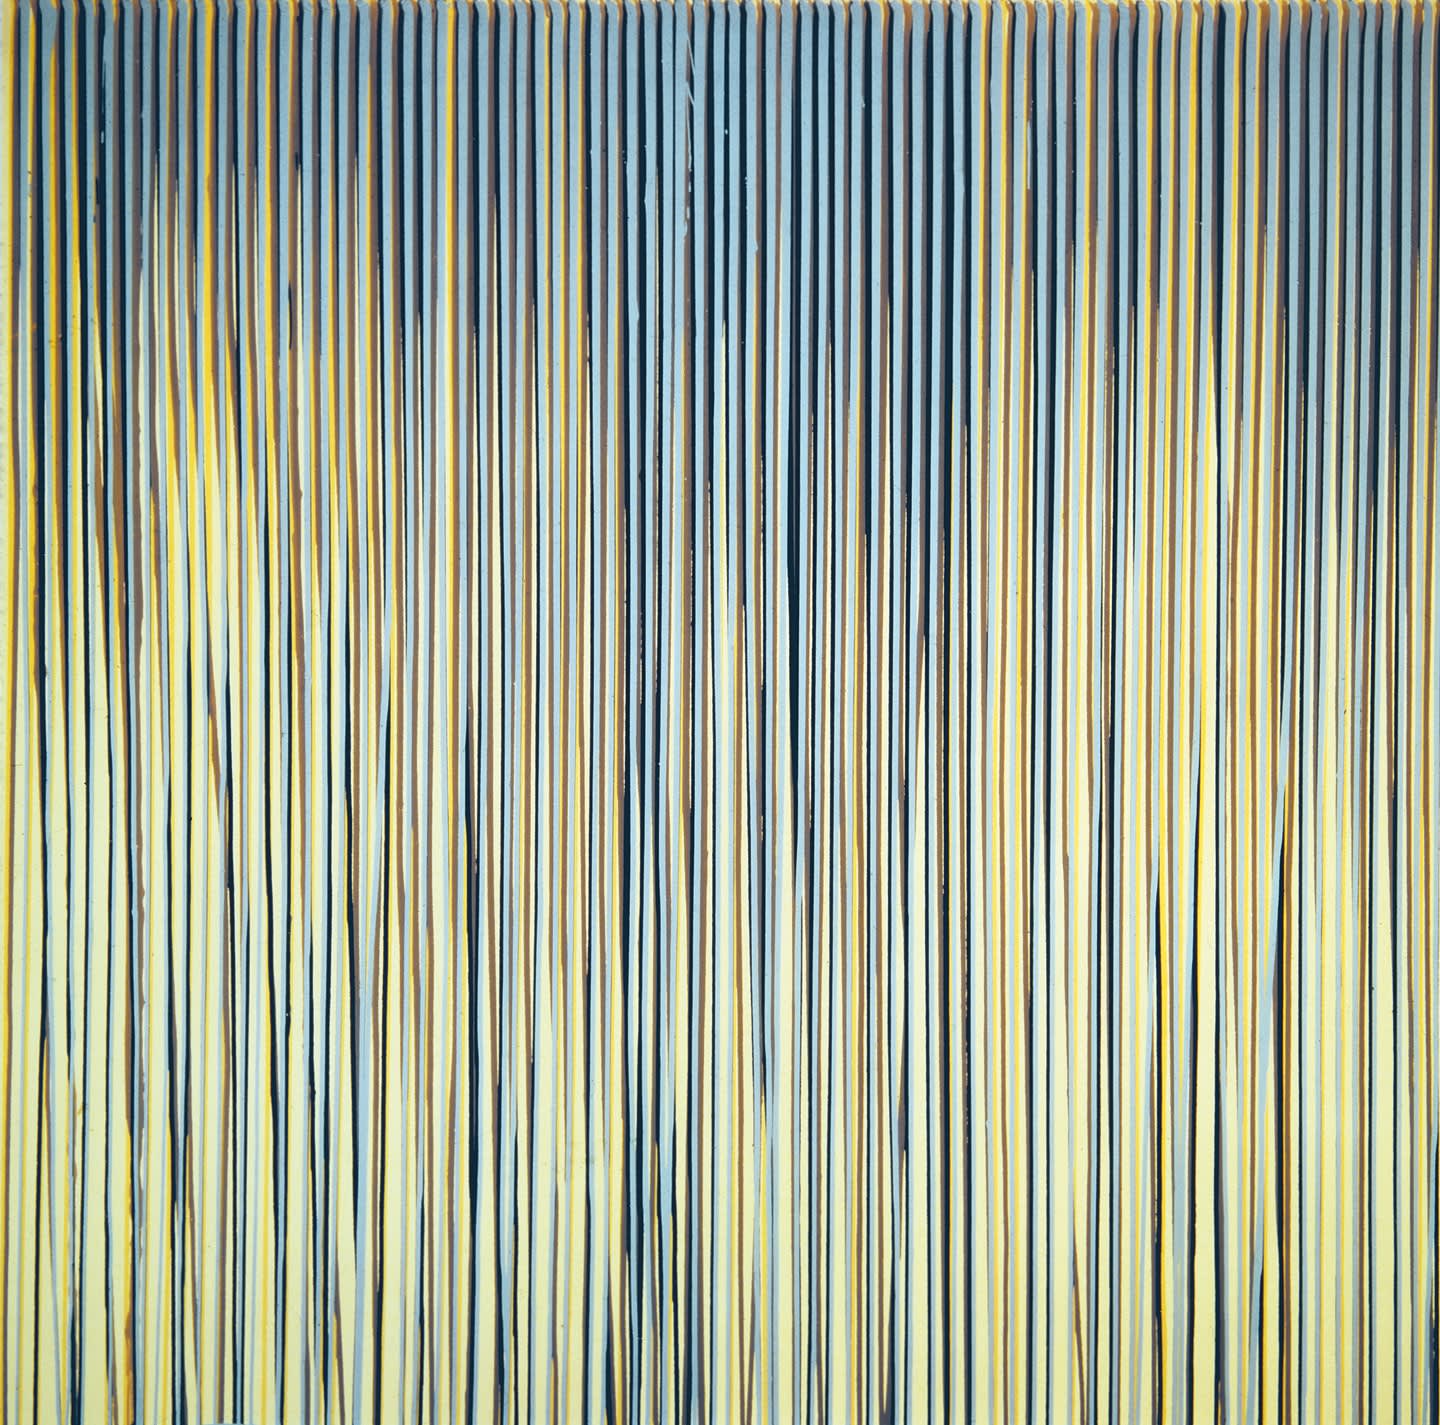 Poured Lines: Cream, Yellow, Beige, Dark Blue, Light Blue, 1993